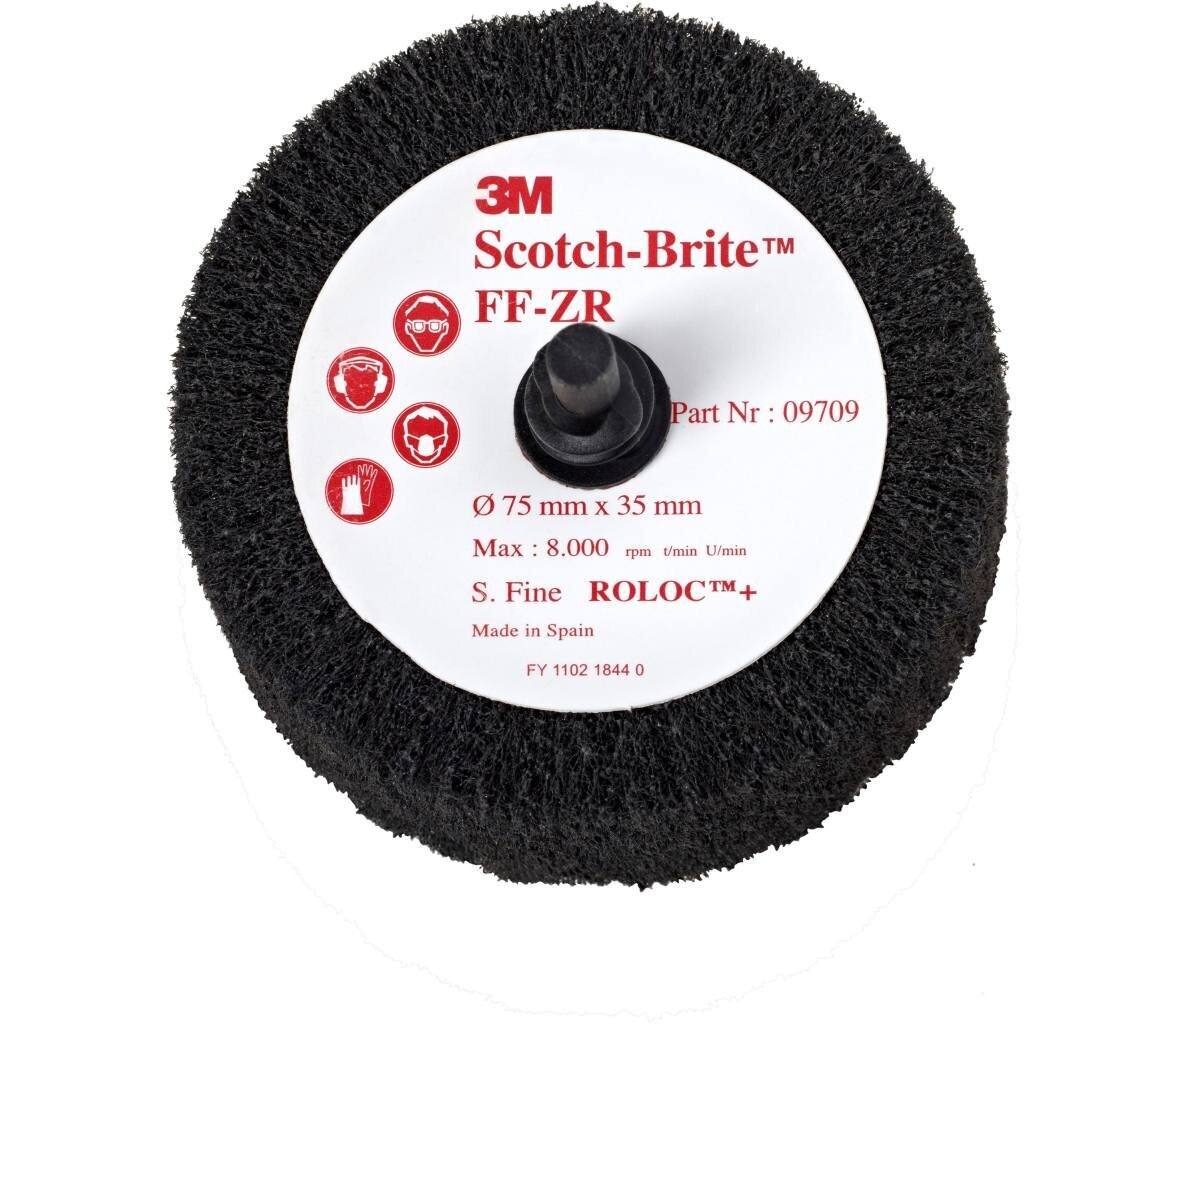 3M Scotch-Brite Roloc Flap brush FF-ZR, grey, 63 mm, 32 mm, S, fine #09708